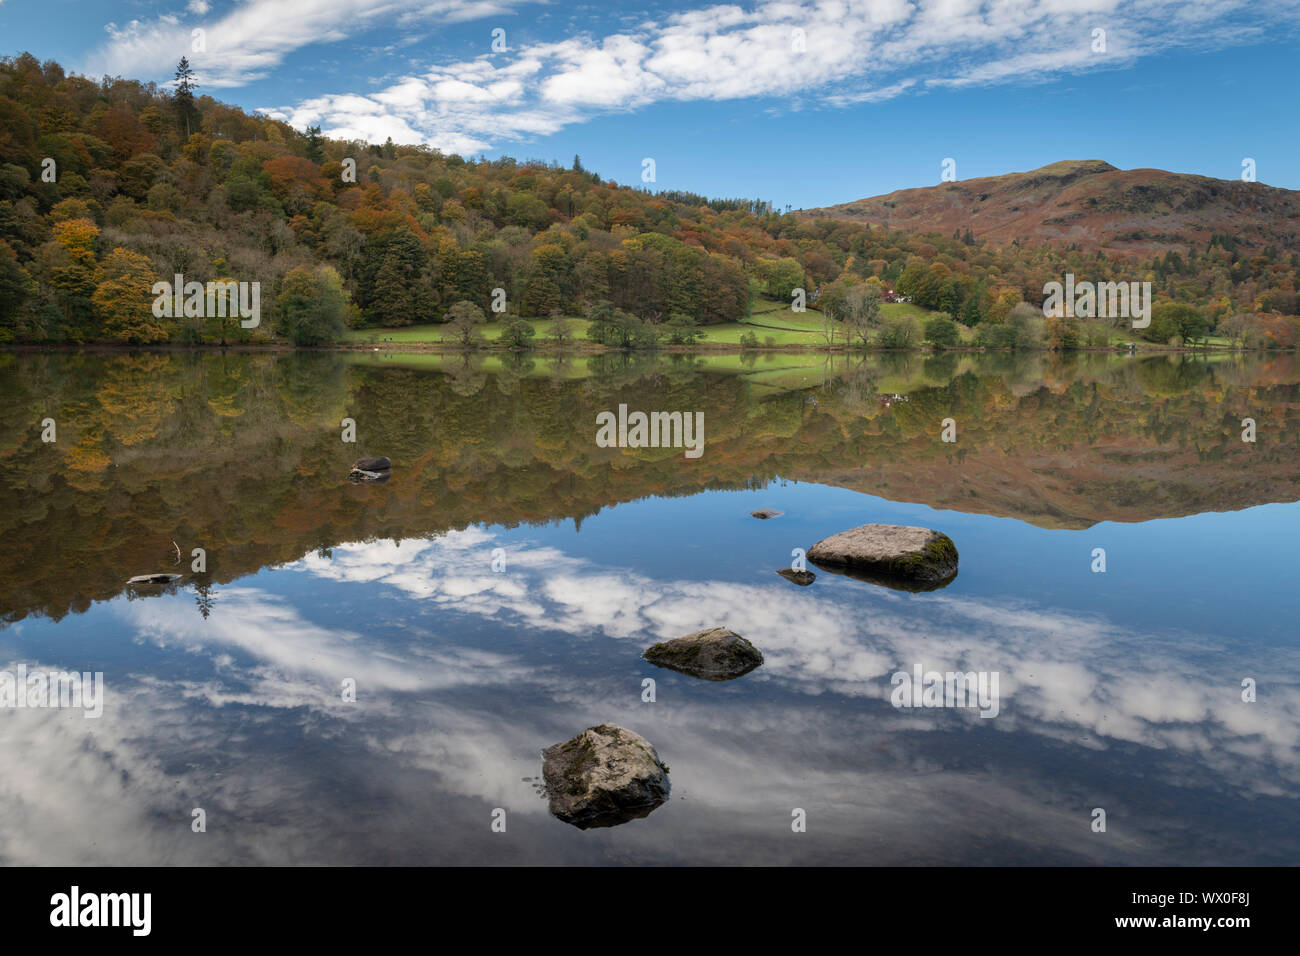 Réflexions sur Grasmere, Lake District National Park, UNESCO World Heritage Site, Cumbria, Angleterre, Royaume-Uni, Europe Banque D'Images